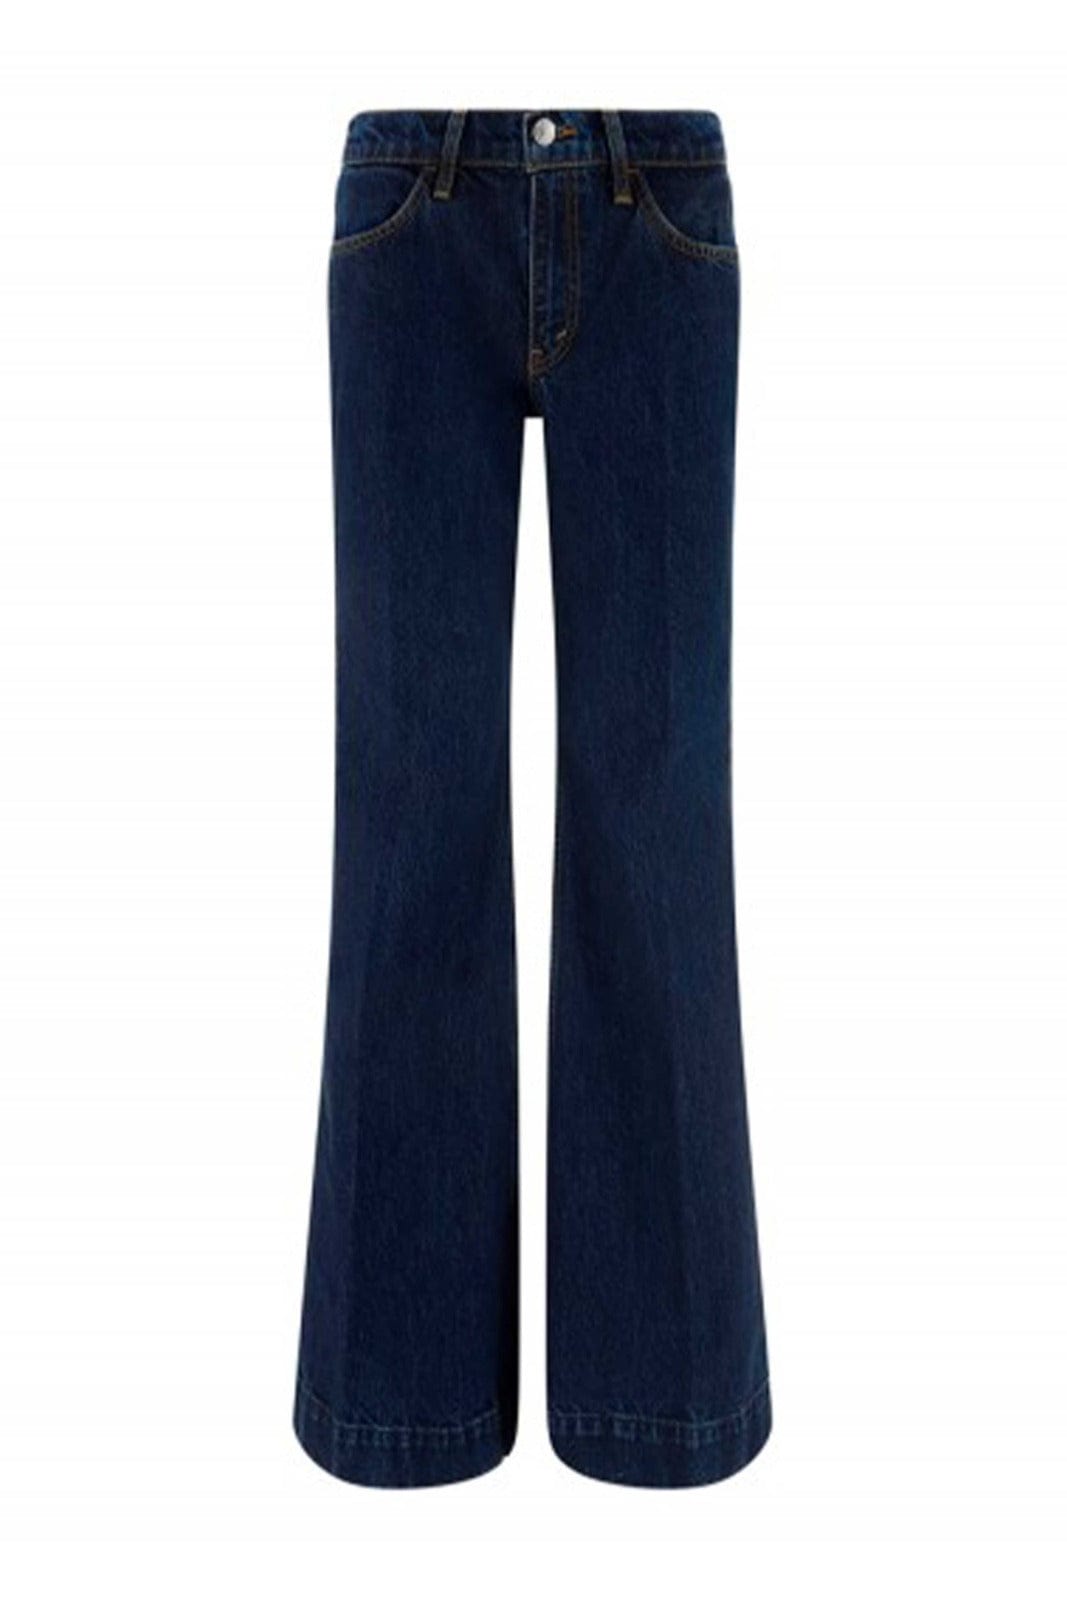 RE/DONE PANTALONE IN DENIM  BLU / 23 Jeans Flare Blu Re/Done